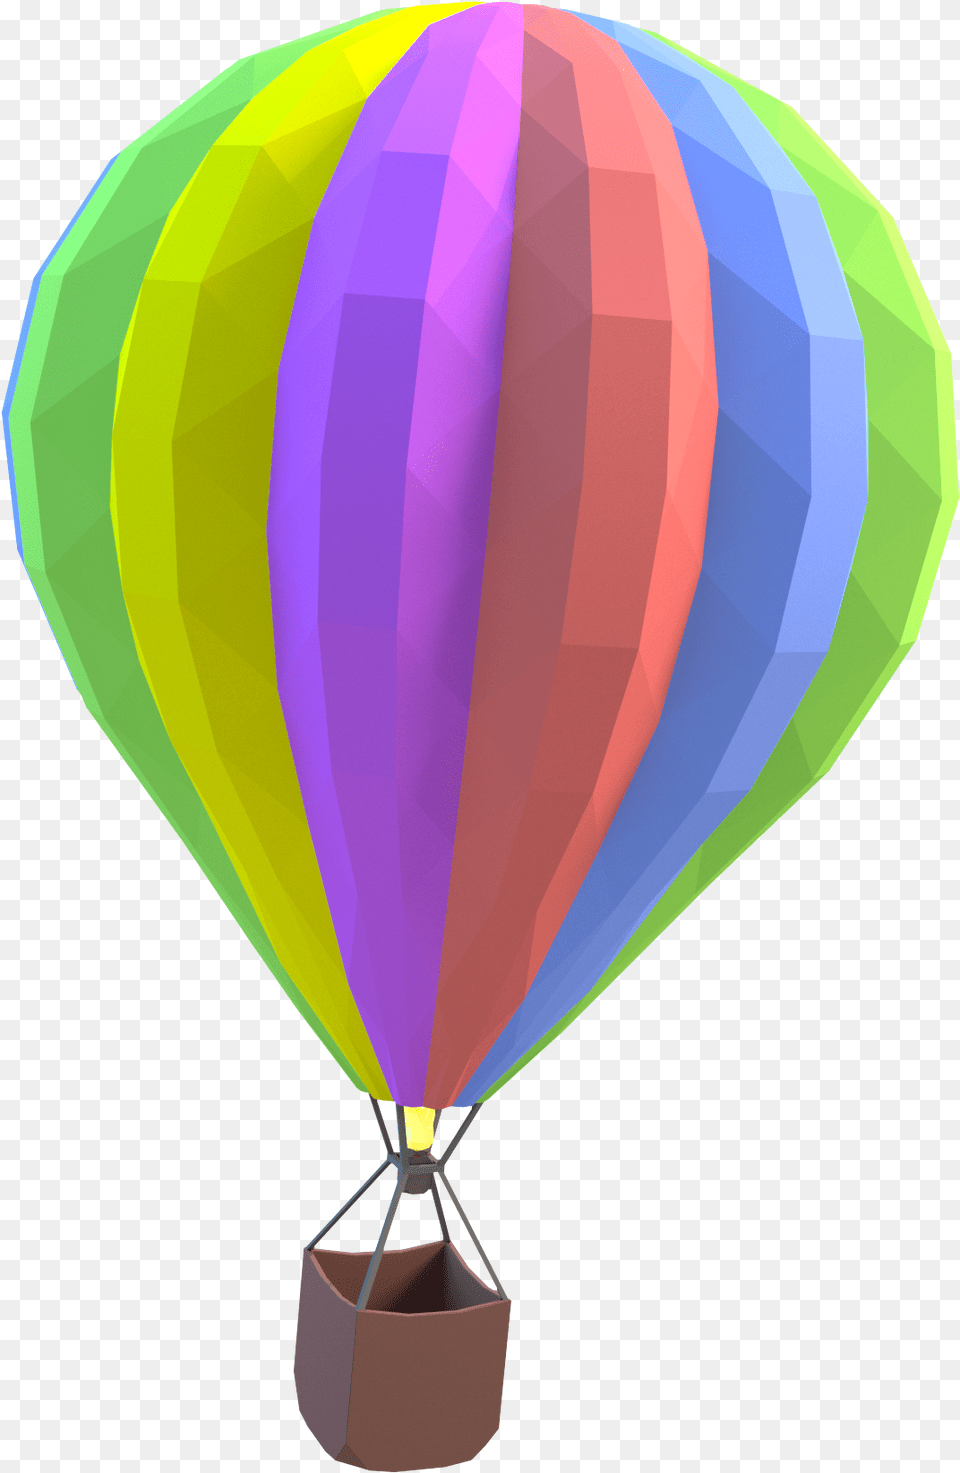 Hotairballoon Wow Thumbnail Hot Air Balloon, Aircraft, Hot Air Balloon, Transportation, Vehicle Png